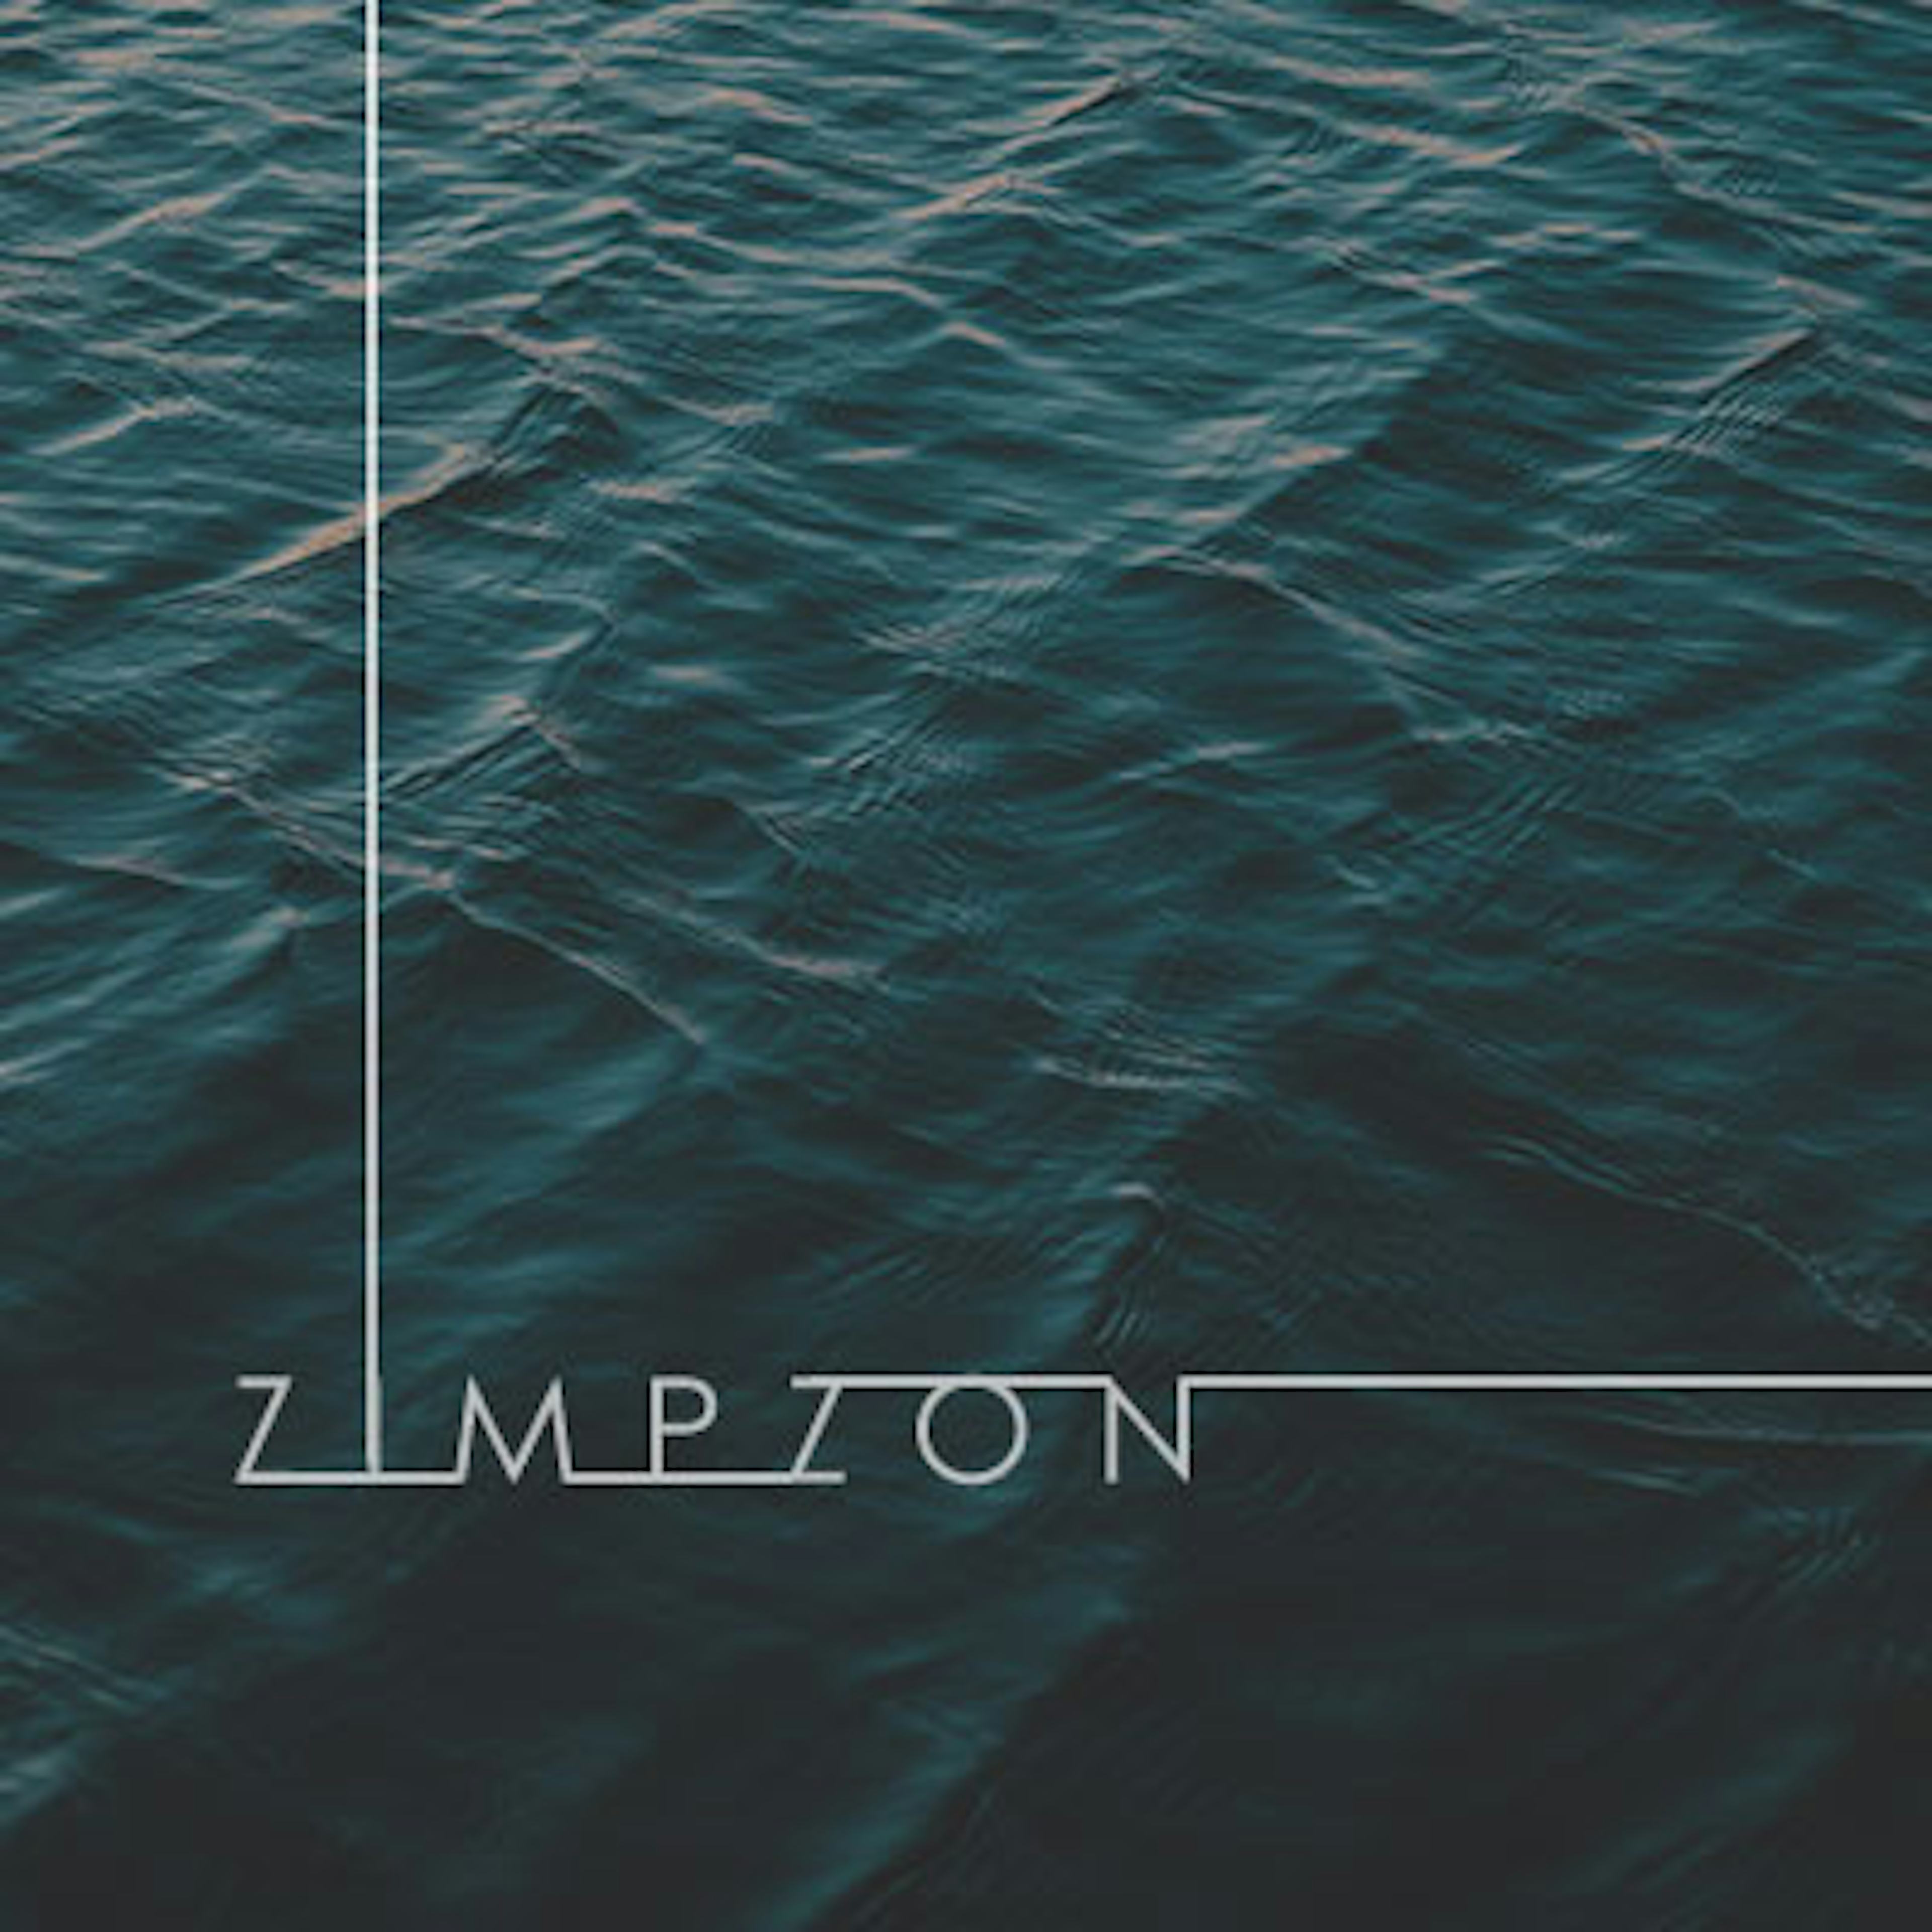 Zimpzon artwork